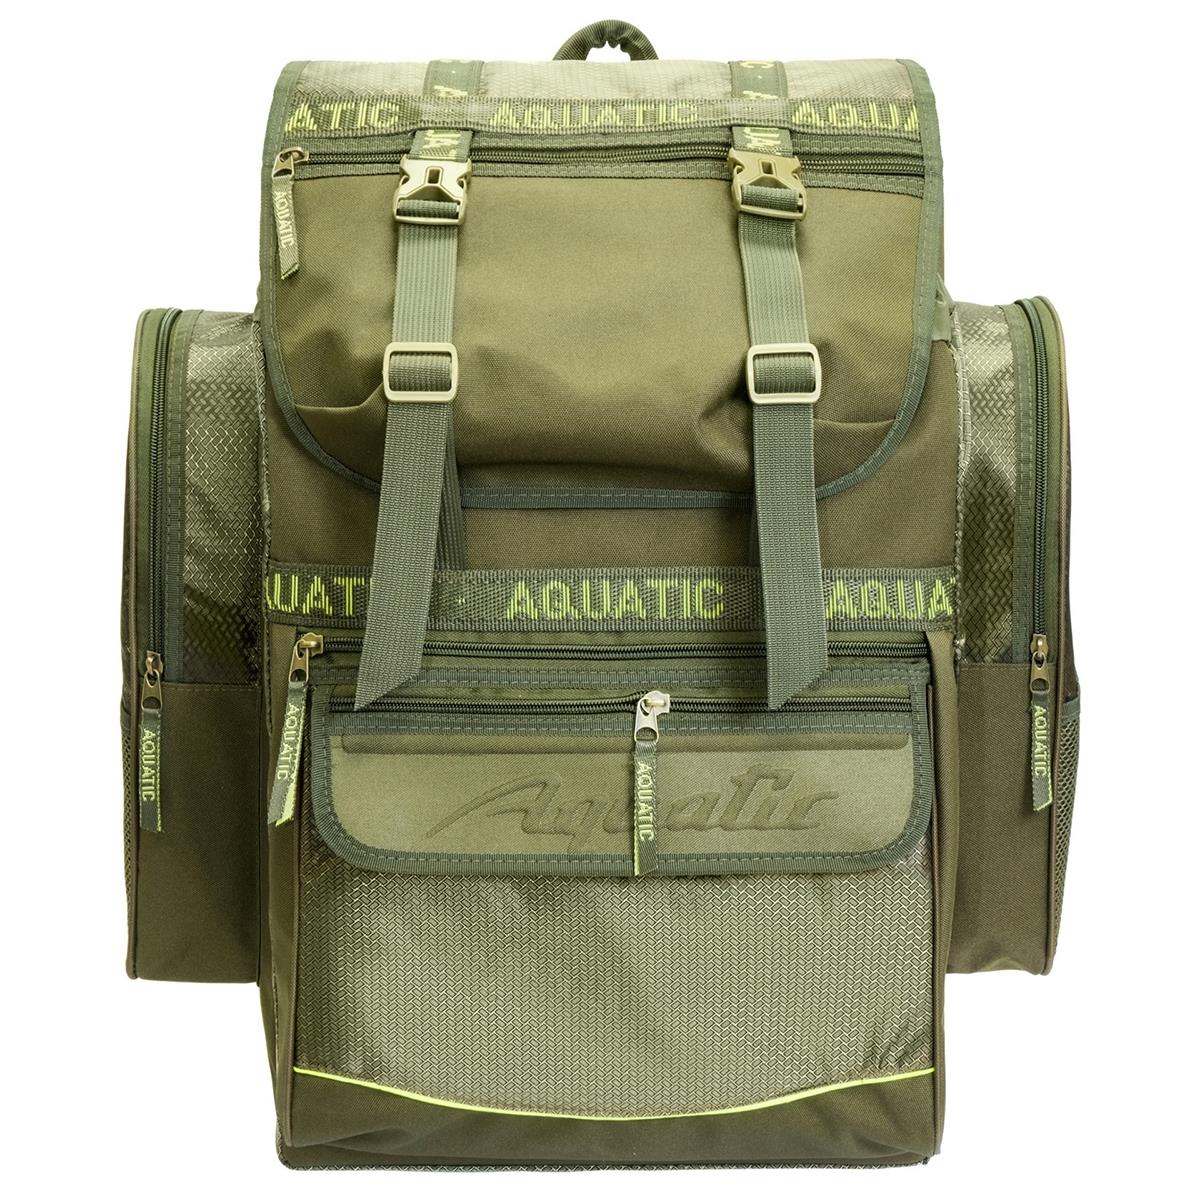 Рюкзак рыболовный (Р-60) Aquatic рюкзак для охоты ро 66 aquatic